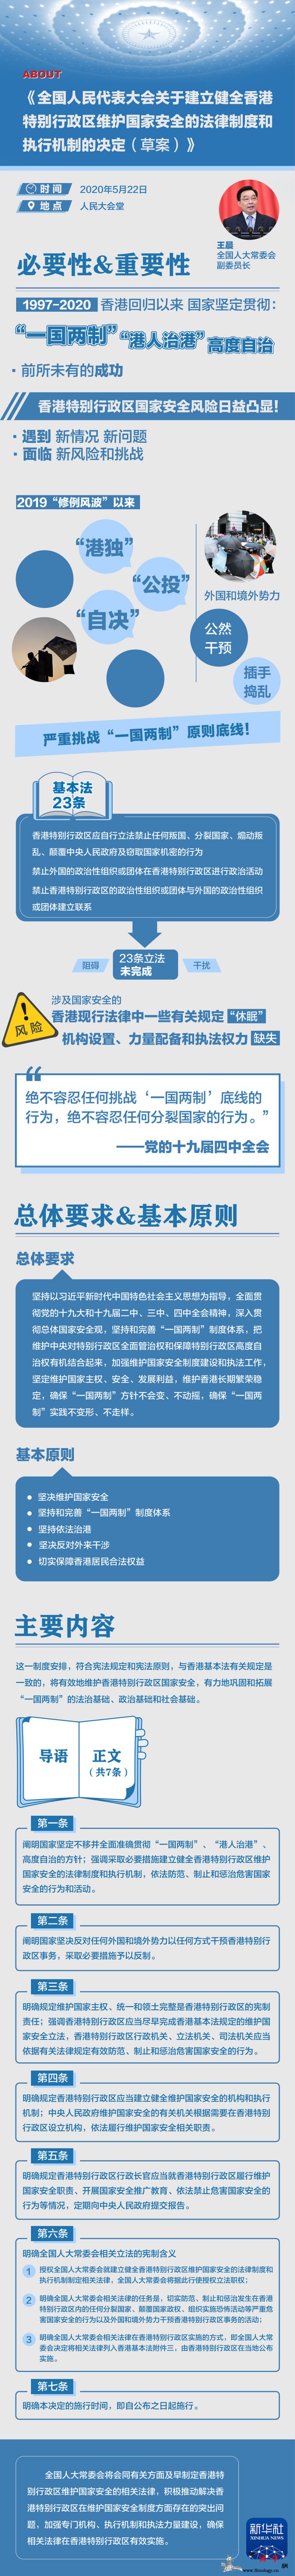 长图丨《全国人民代表大会关于建立健全_香港特别行政区-画中画-建立健全-